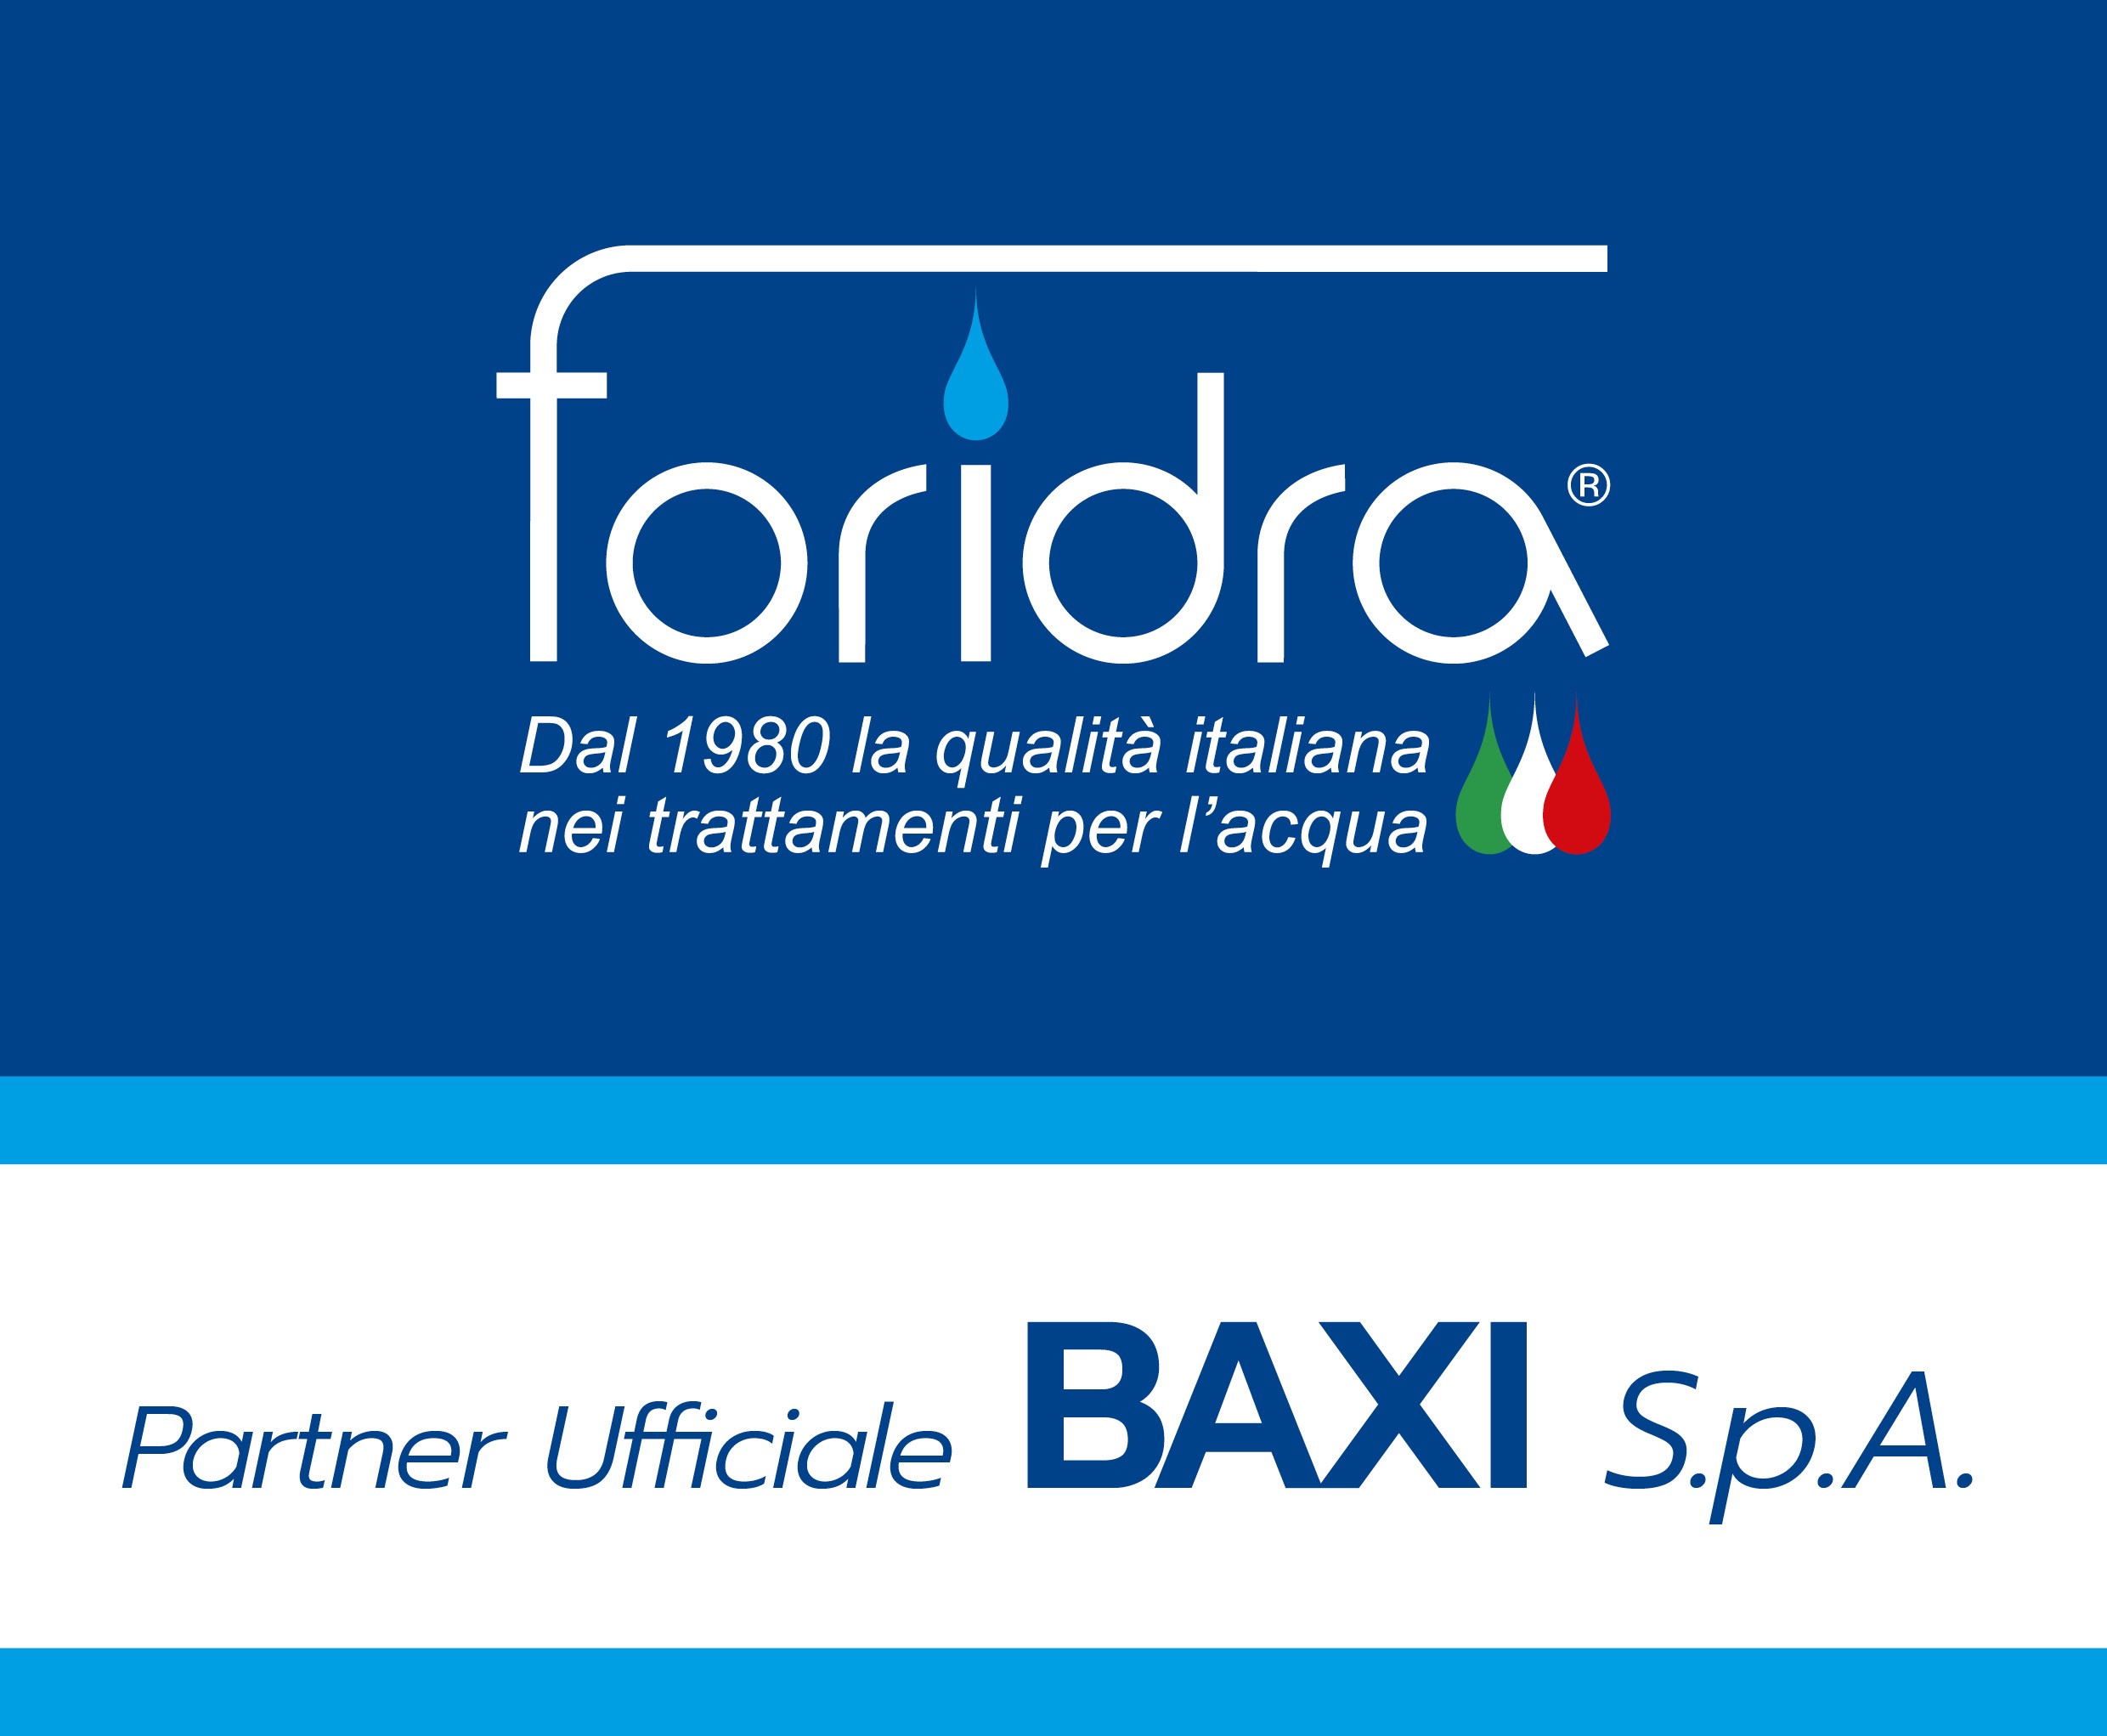 BAXI S.p.A. sceglie FORIDRA S.r.l. come partner ufficiale per il trattamento dell'acqua.